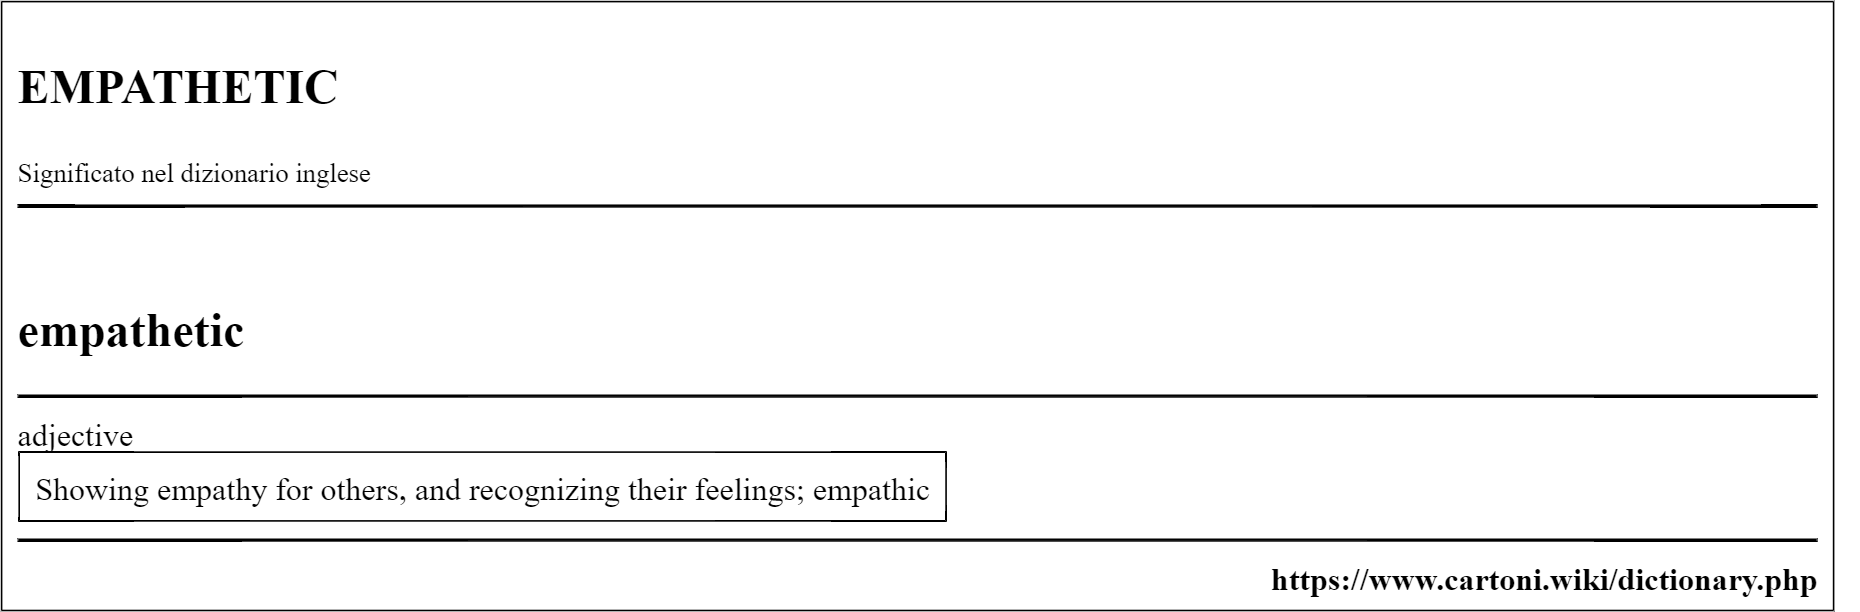 empathetic pronuncia e significato nel dizionario inglese